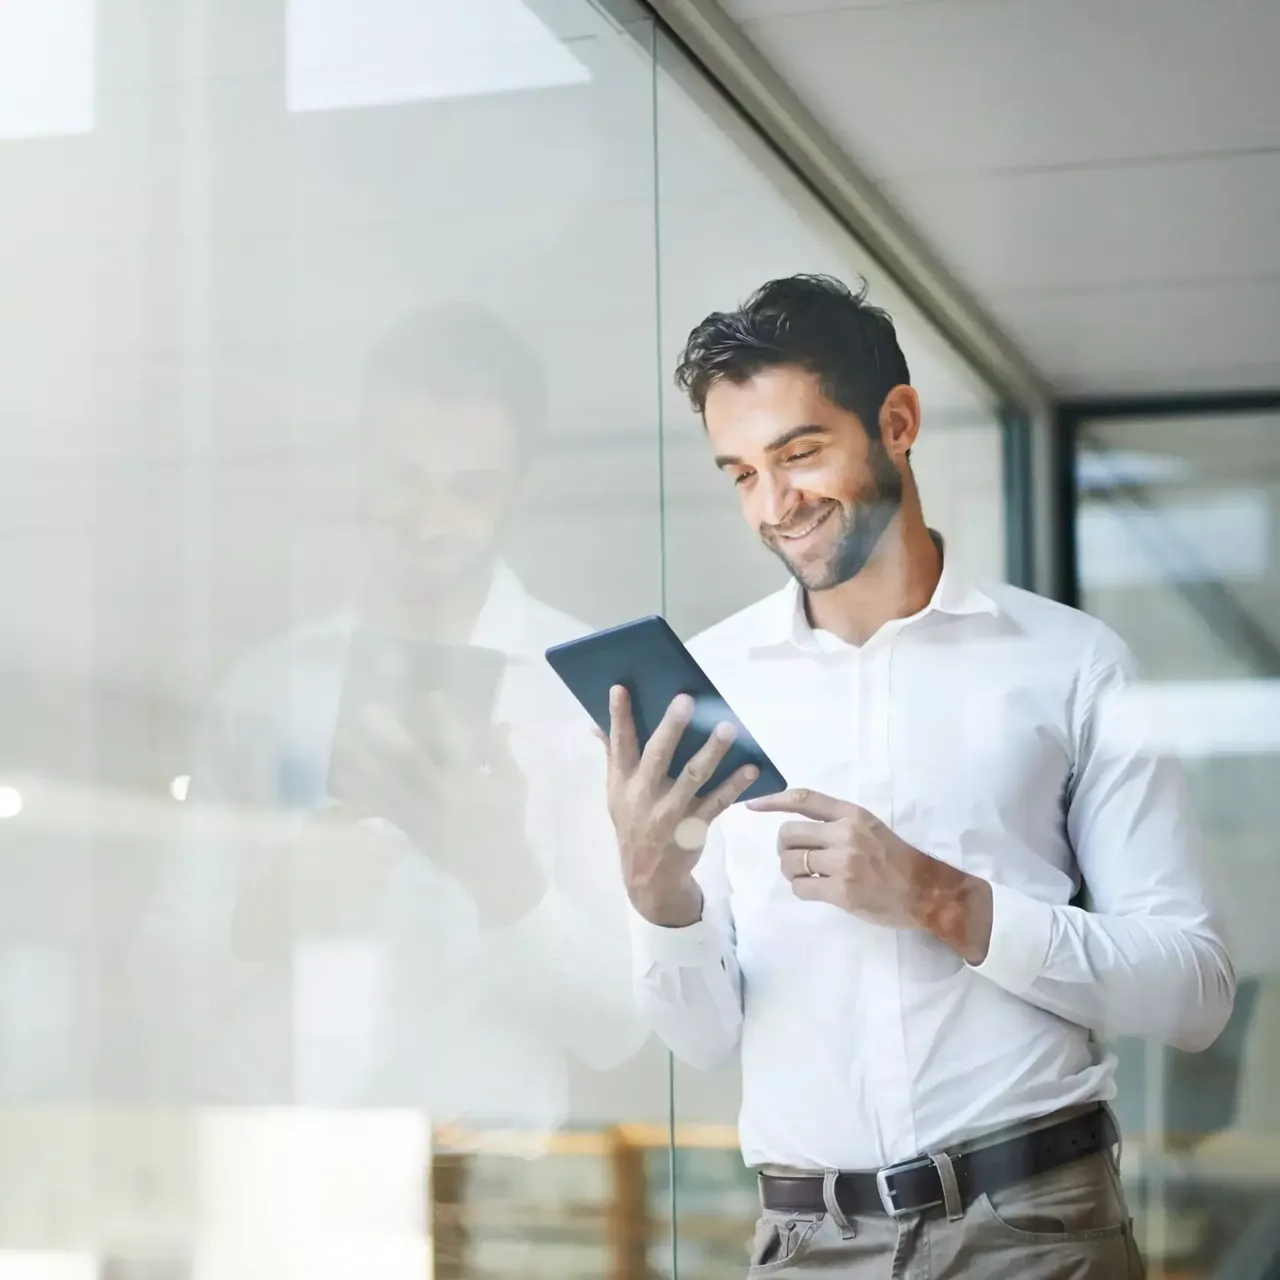 Ein junger Mann mit einem weißen Hemd steht im Büro an einer Glaswand und schaut interessiert auf sein iPad